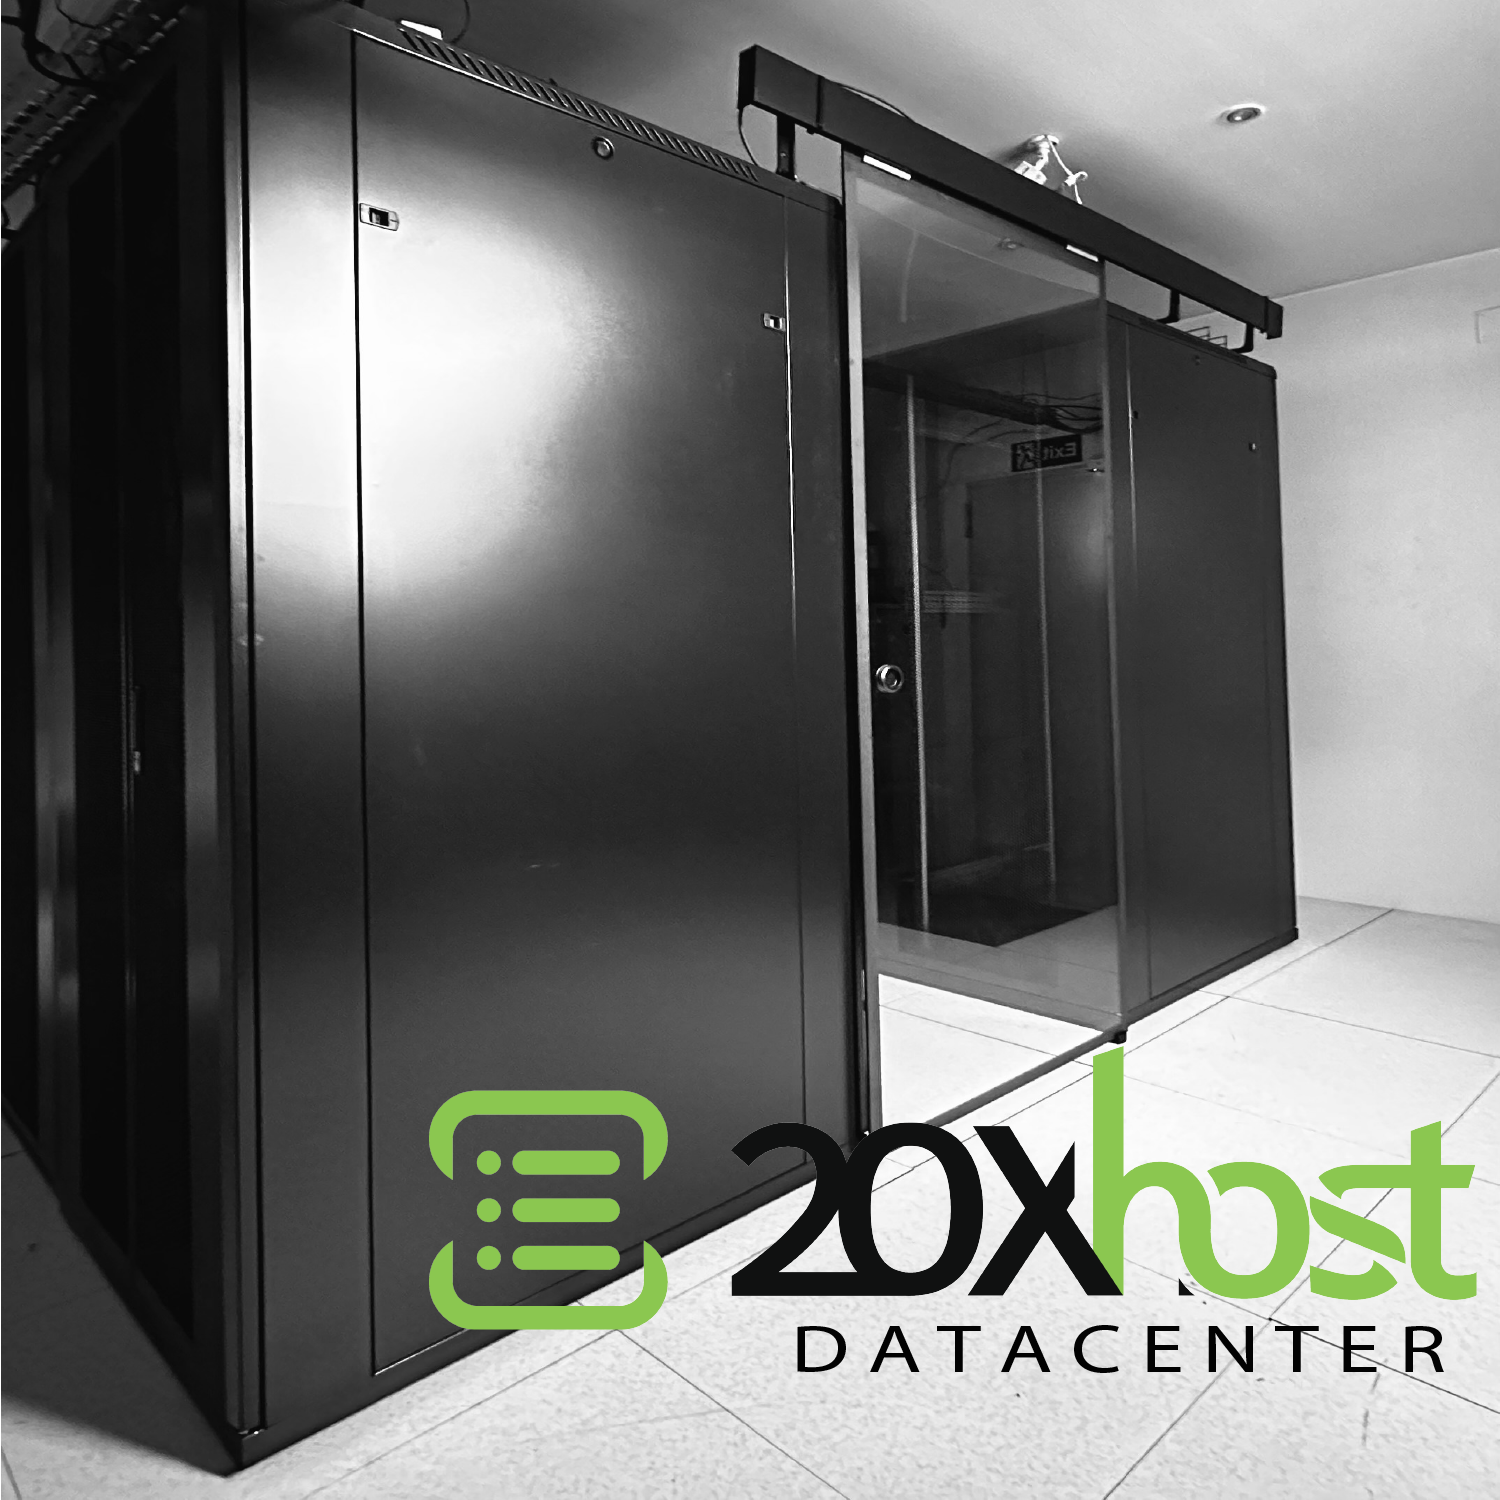 20xhost-datacenter-inside.png